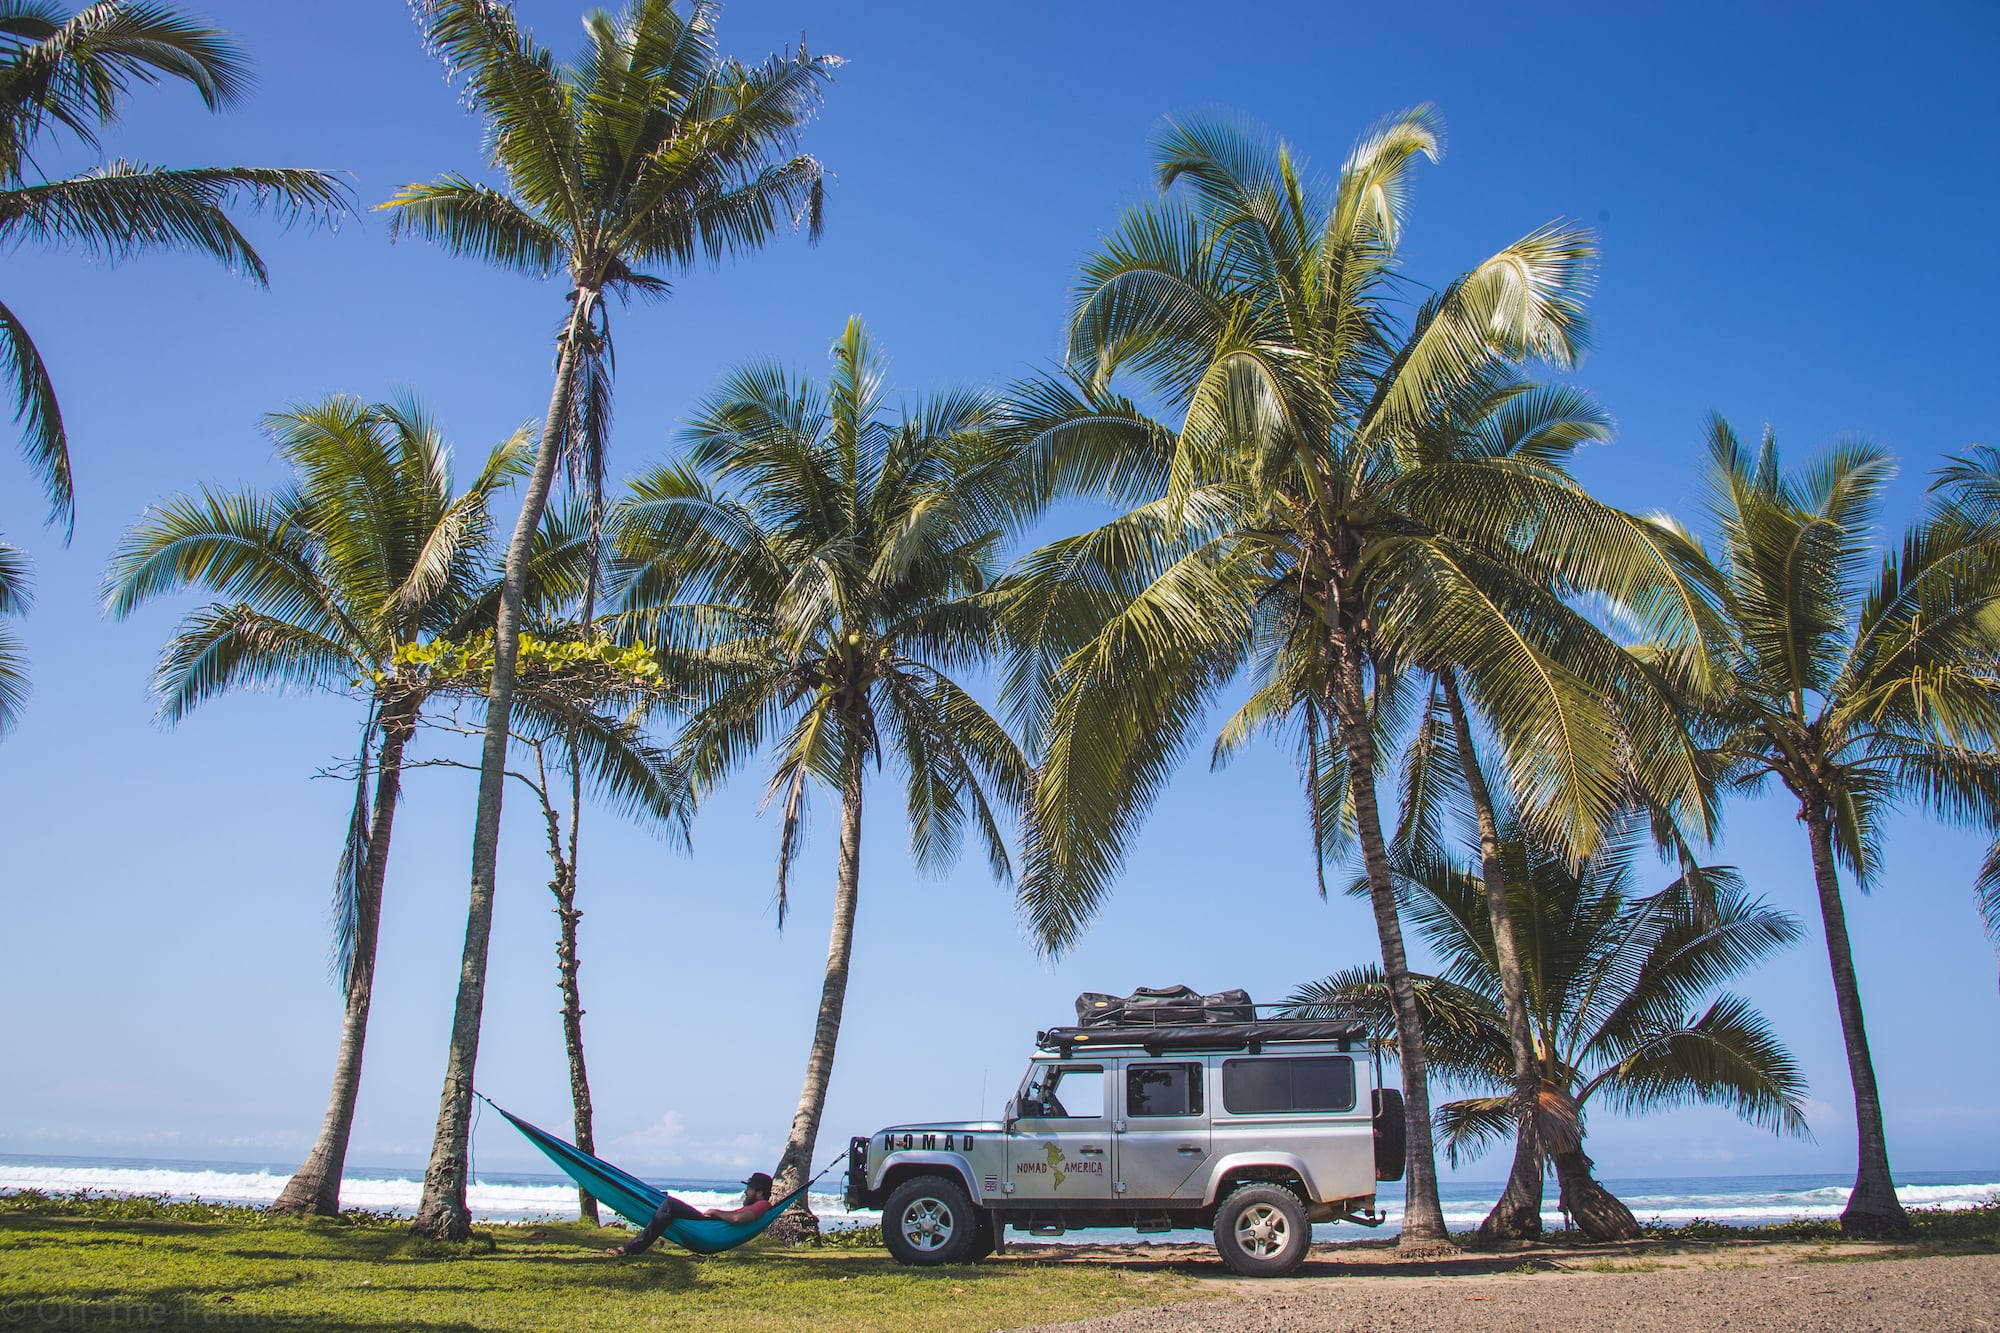 Für Rundreisen mit Mietwagen in fernen Ländern wie Costa Rica sind Reiseversicherungen wichtig